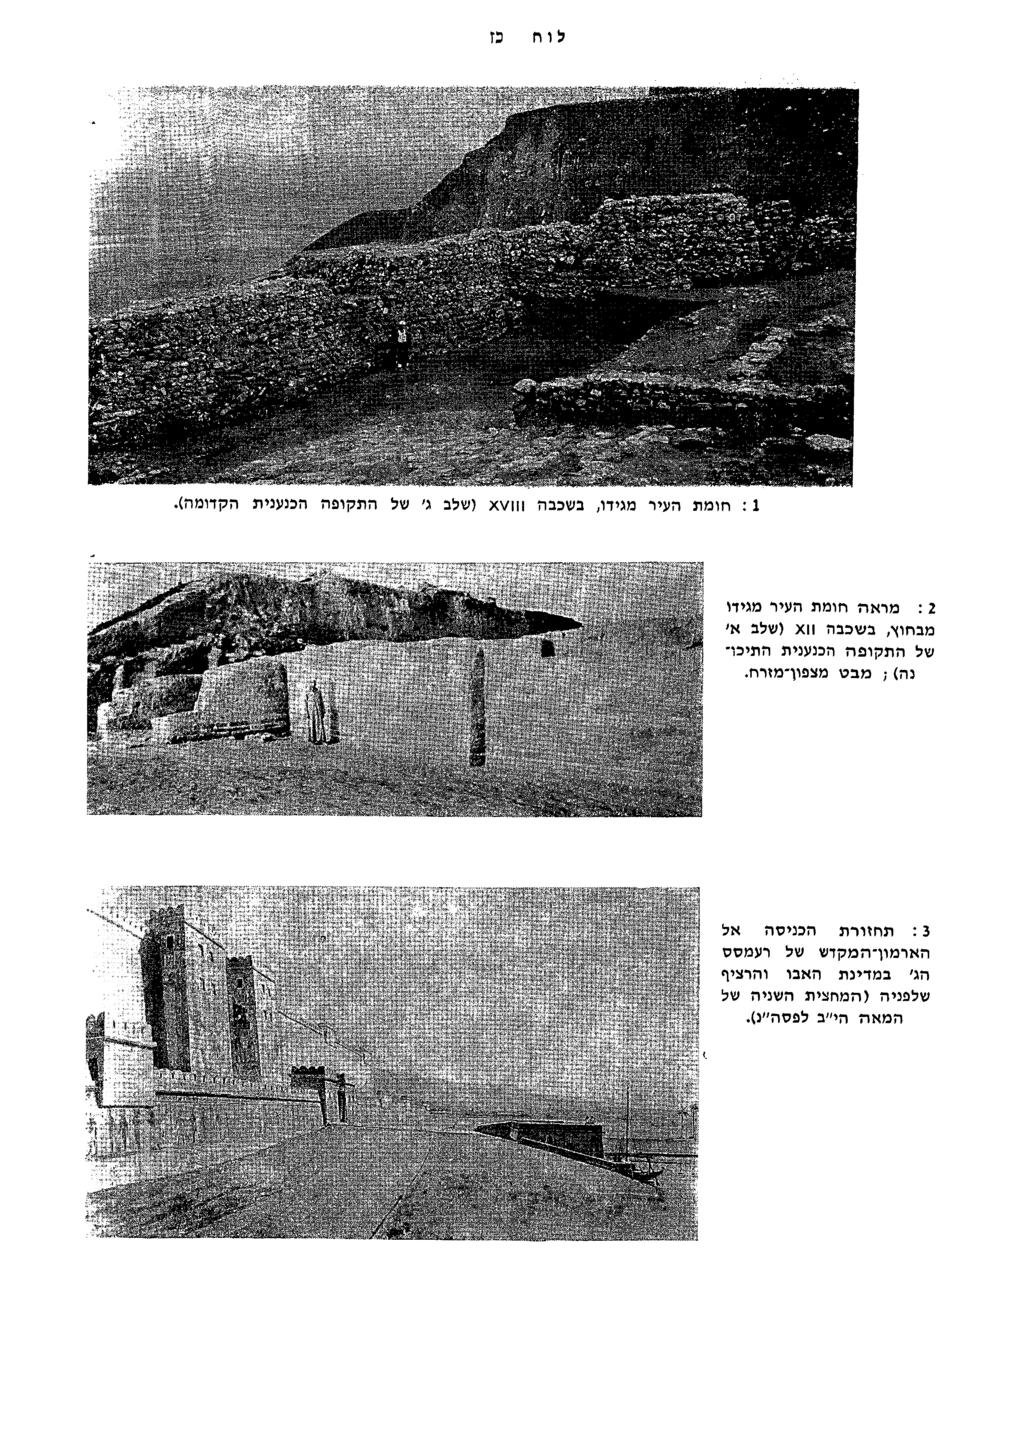 אתר דעת - מכללת הרצוג לו ח בז :1 חומת העיר מגידו, בשכבה 22 x כנענית הקדומ l ה).